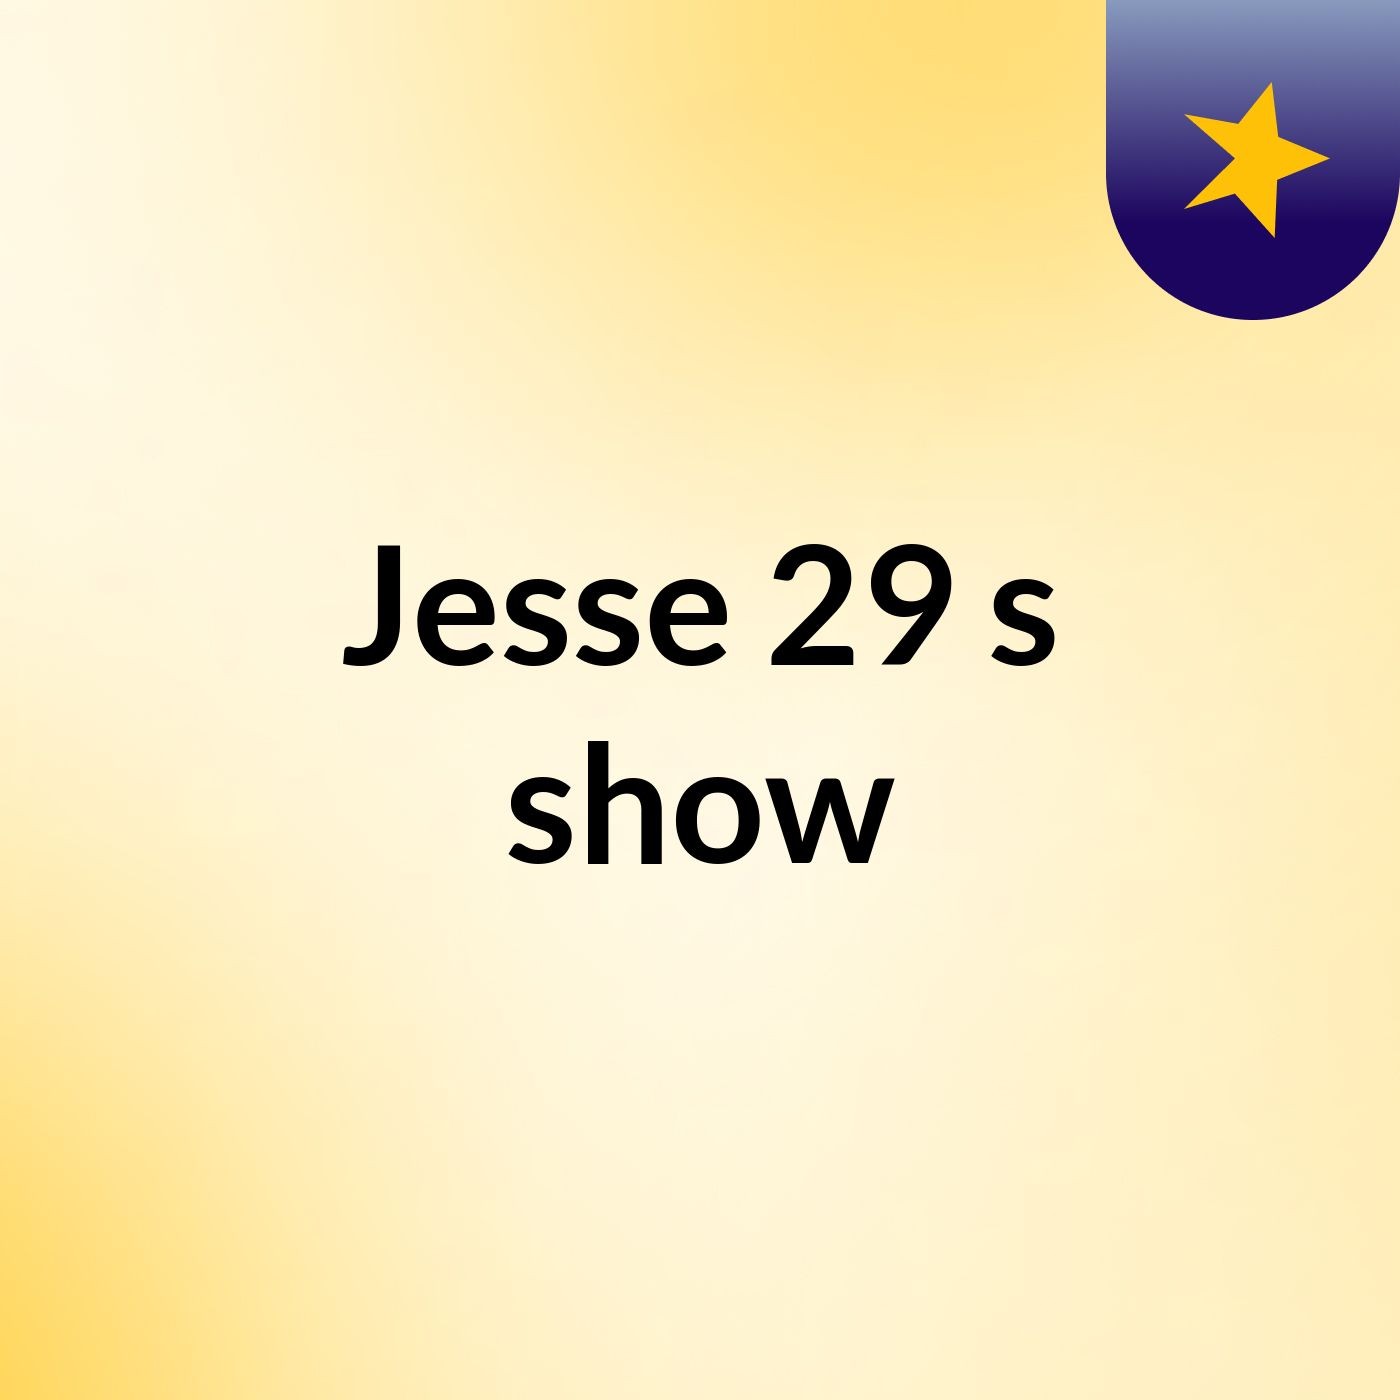 Jesse 29's show